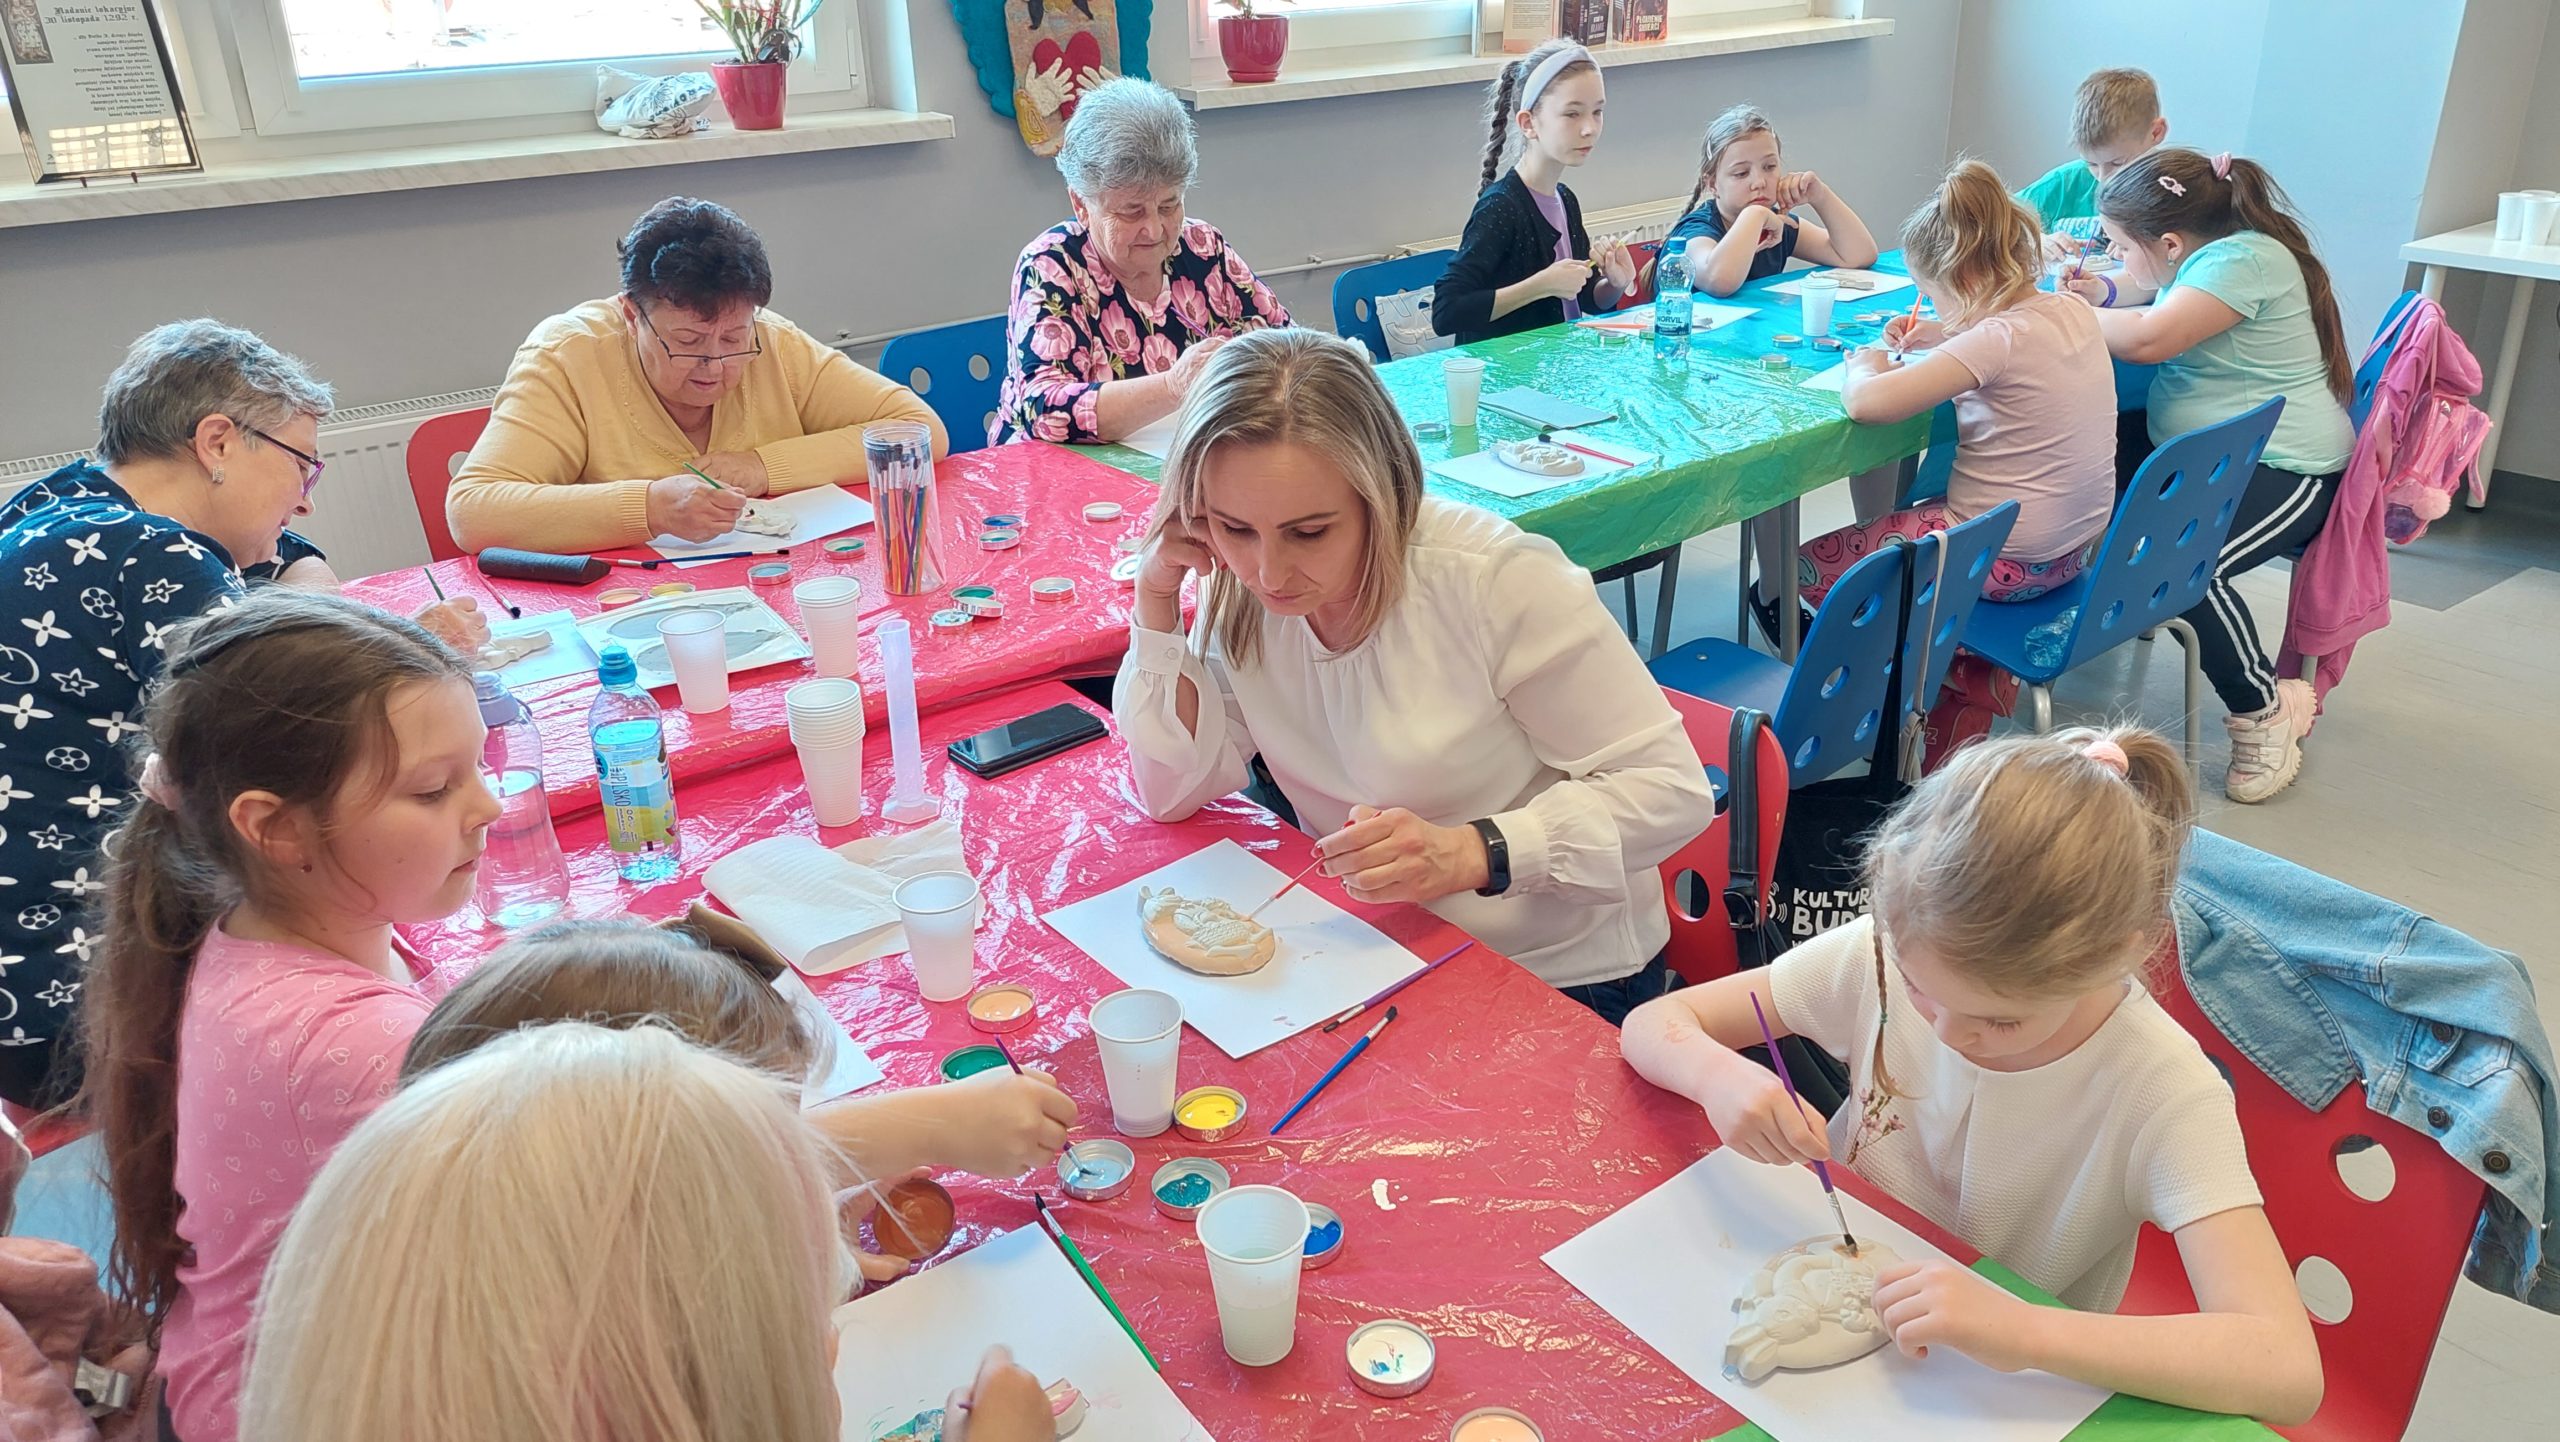 Czytelnia biblioteki. Dorośli, dzieci i seniorzy przy stołach malują farbami gipsowe zawieszki w kształcie jajka.